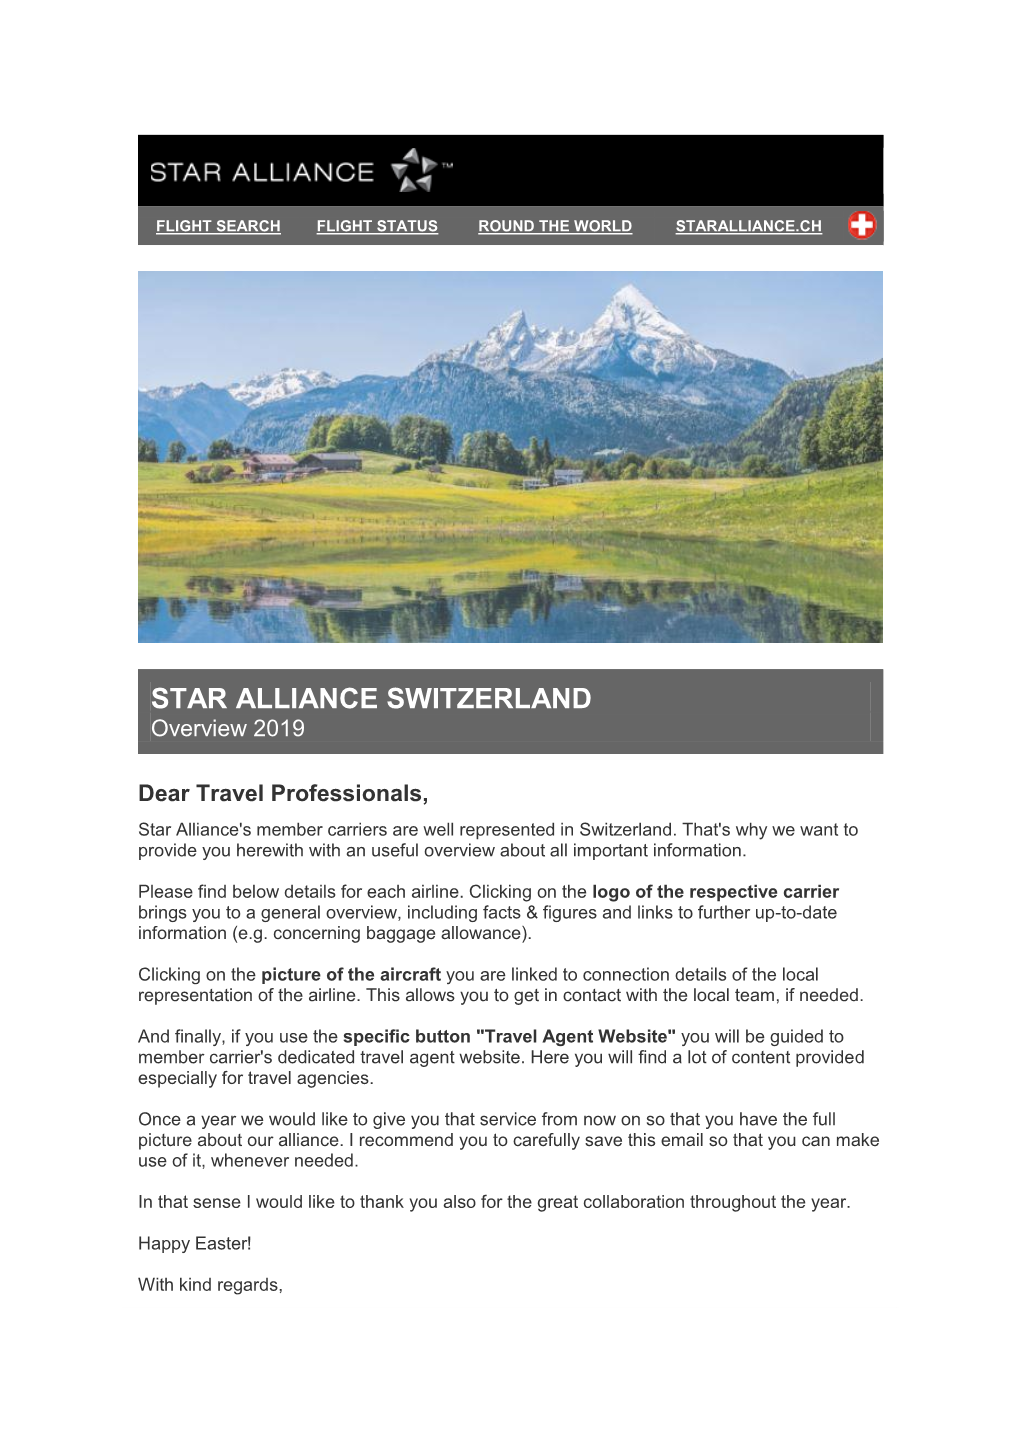 STAR ALLIANCE SWITZERLAND Overview 2019